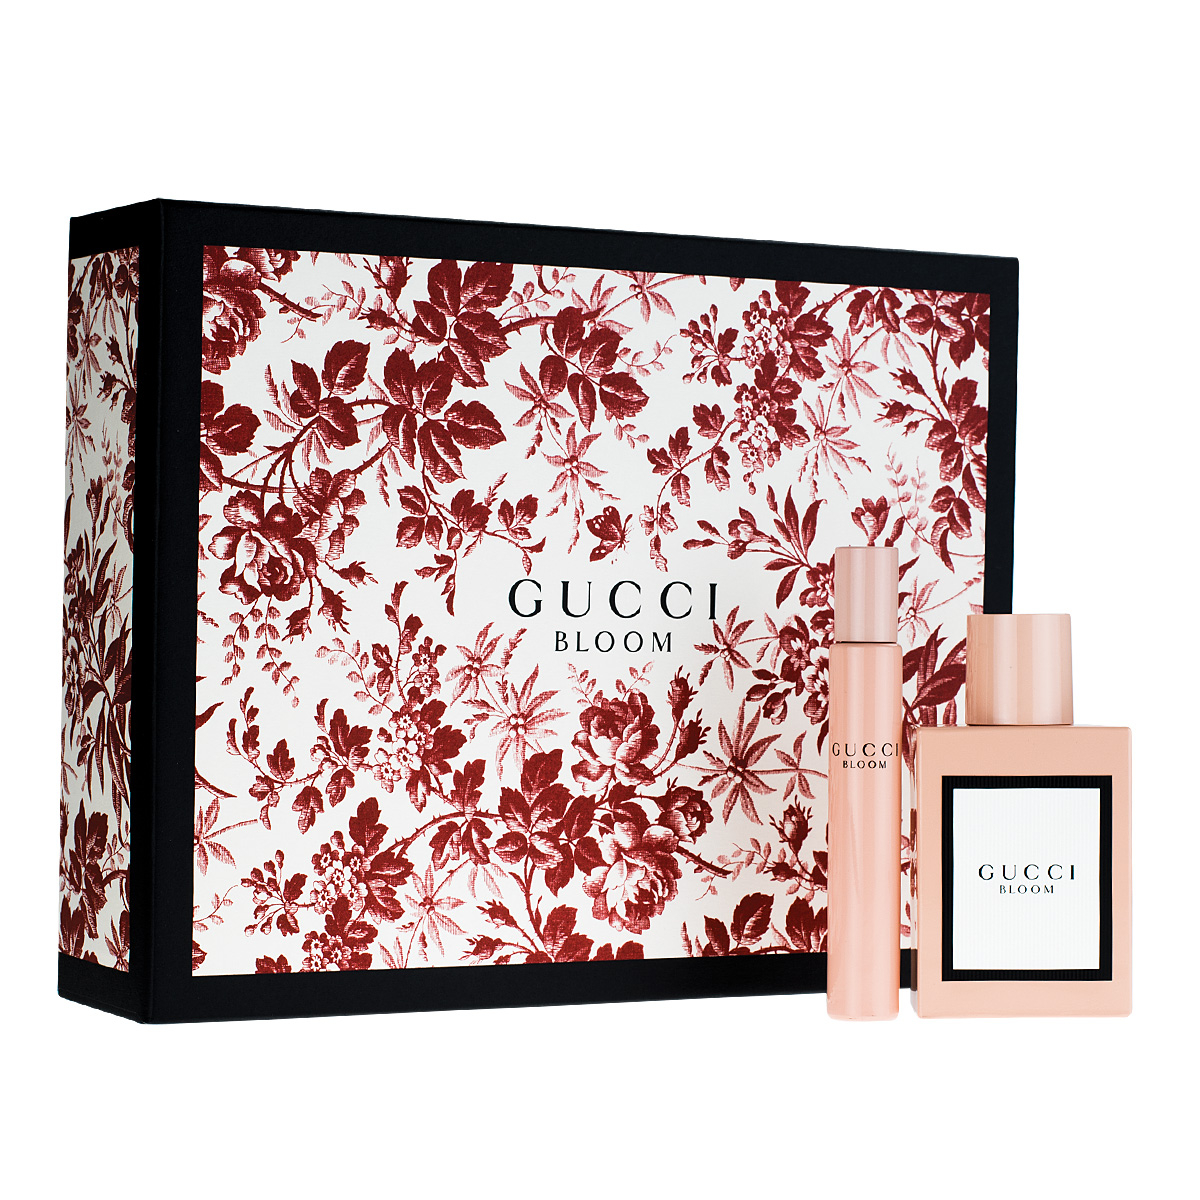 Gucci Bloom Eau de Parfum 50ml Gift Set